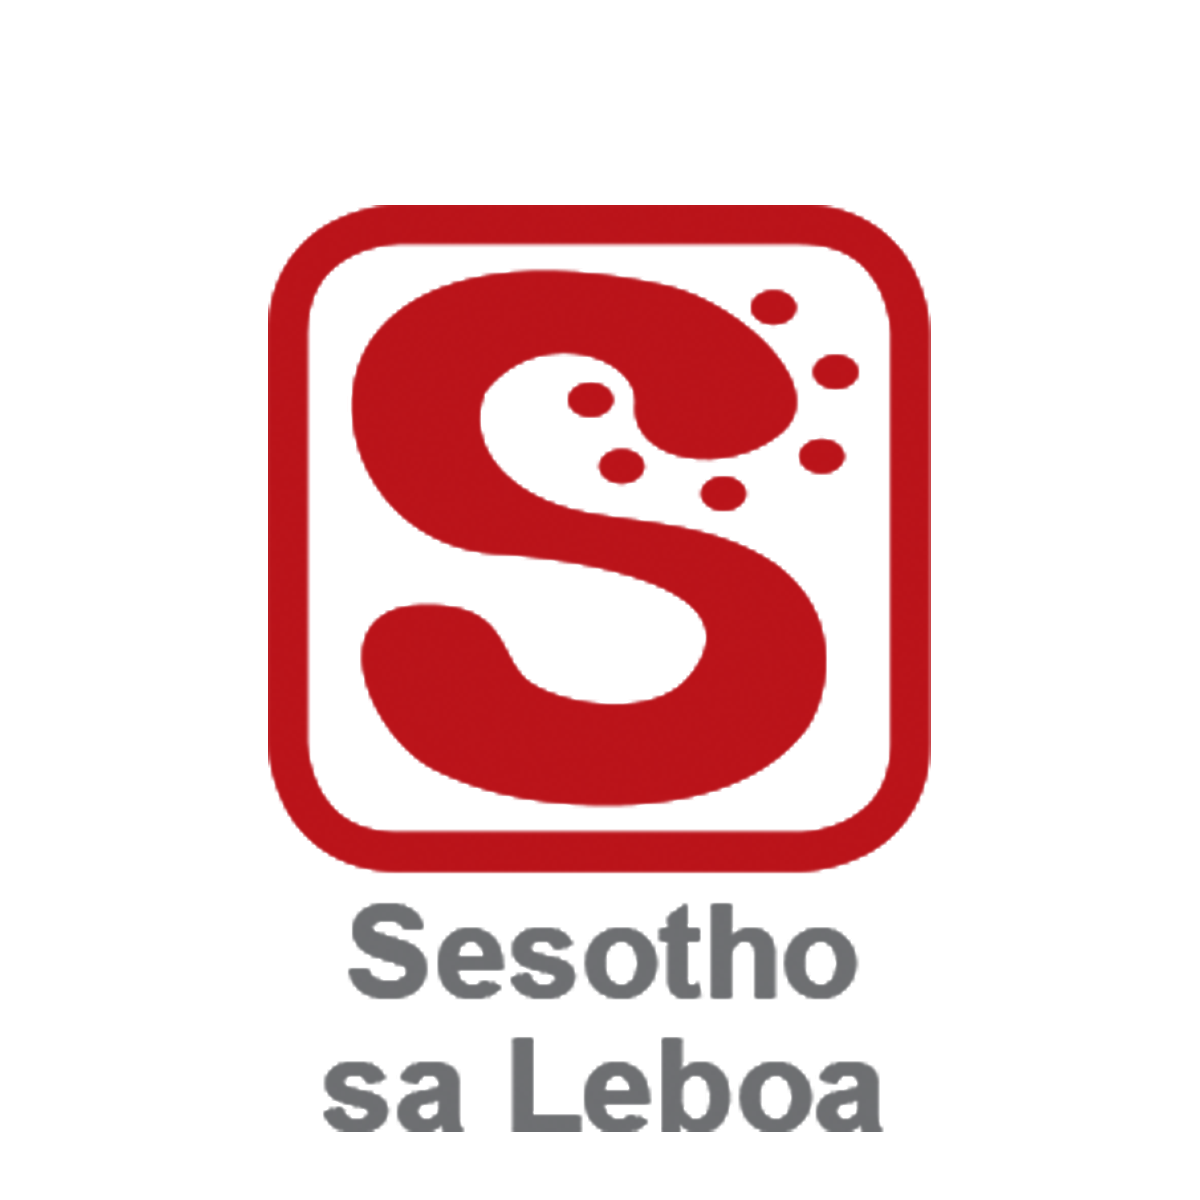 The Talking Dictionary Sesotho sa Leboa